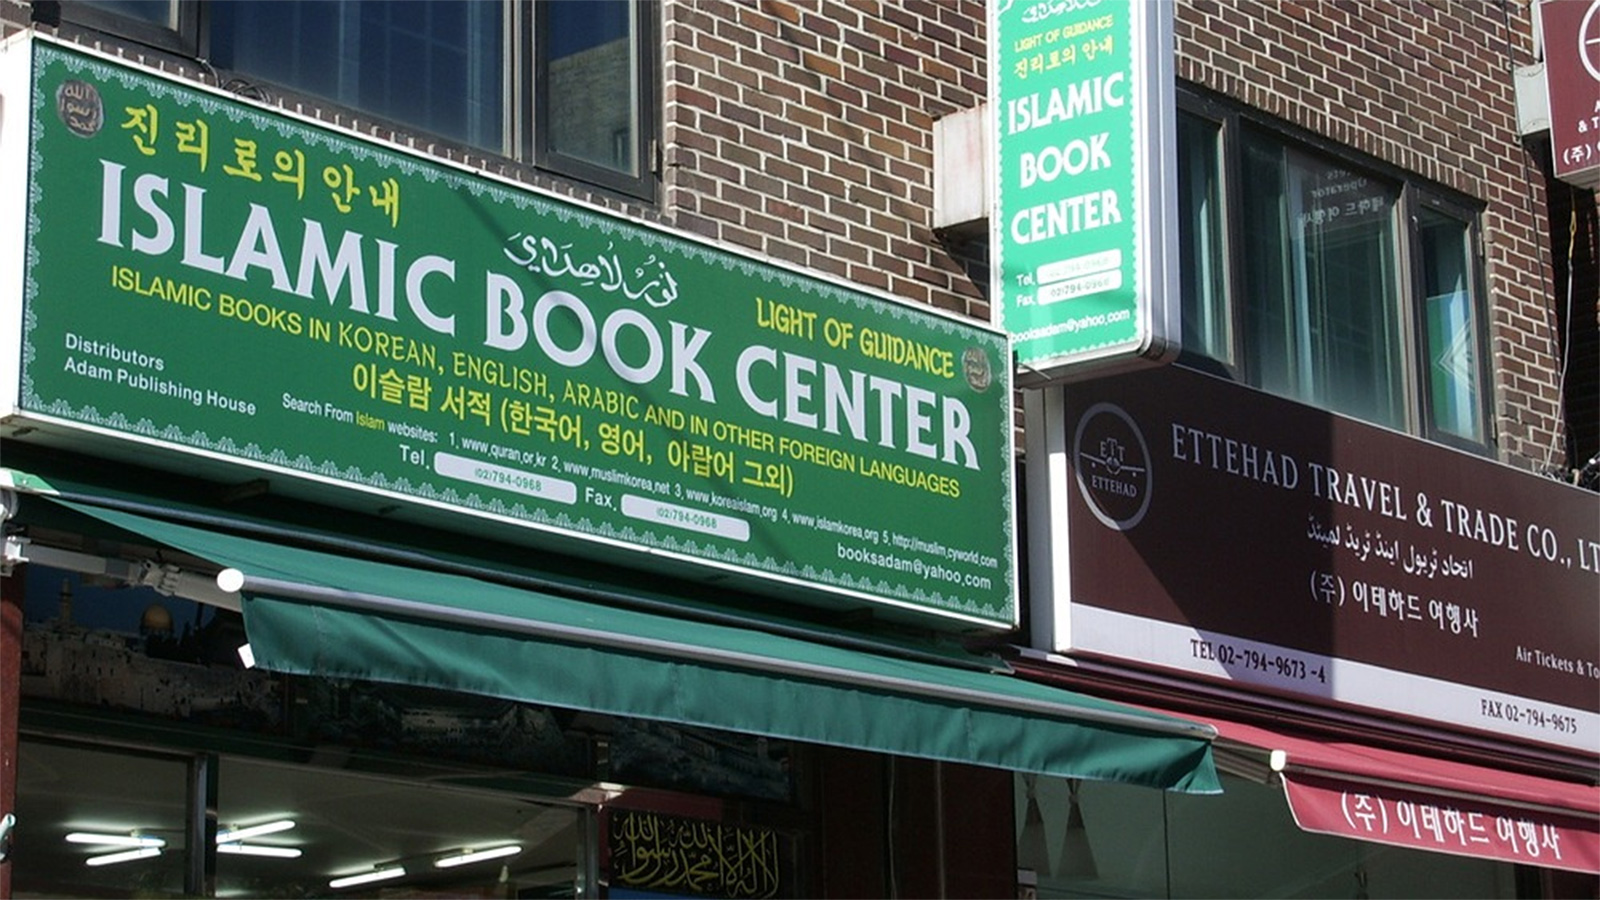 ‪مكتبة إسلامية تبيع الكتب الدينية باللغات الكورية والإنجليزية والعربية في كوريا الجنوبية‬ (مواقع التواصل)